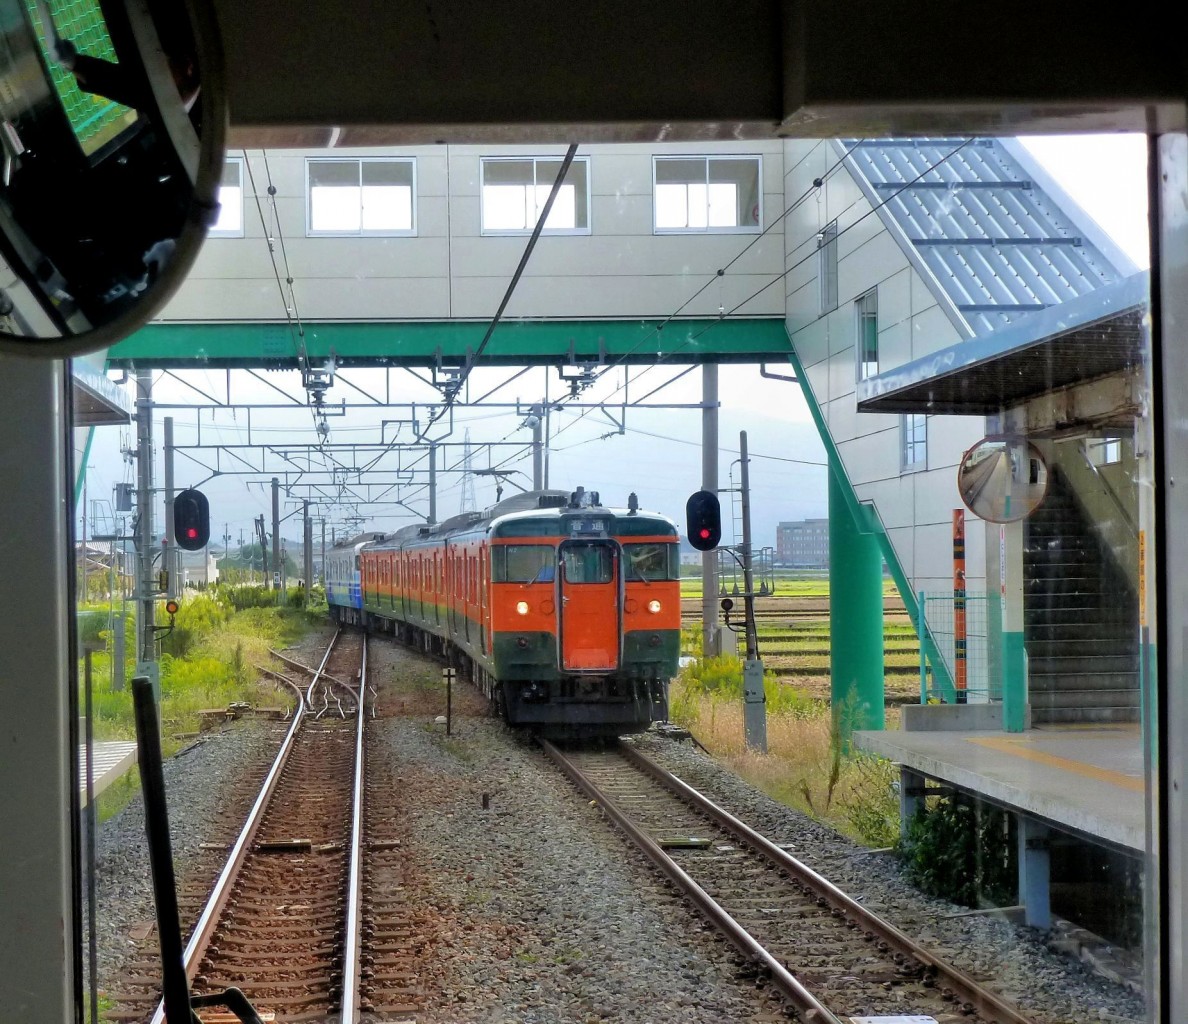 Serie 115 der Region Niigata: Einige Züge haben wieder ihren Originalanstrich dunkelgrün / orange bekommen. Hier Zug KUMOHA 115-1043 an der Spitze von zwei Dreiwageneinheiten bei der Einfahrt in Nishi Shibata. 18.Oktober 2011. Man beachte die Schutzweiche für die Ausfahrt in abweichender Stellung. (Aufnahme durch die verglaste Führerstandrückwand eines Gegenzugs) 